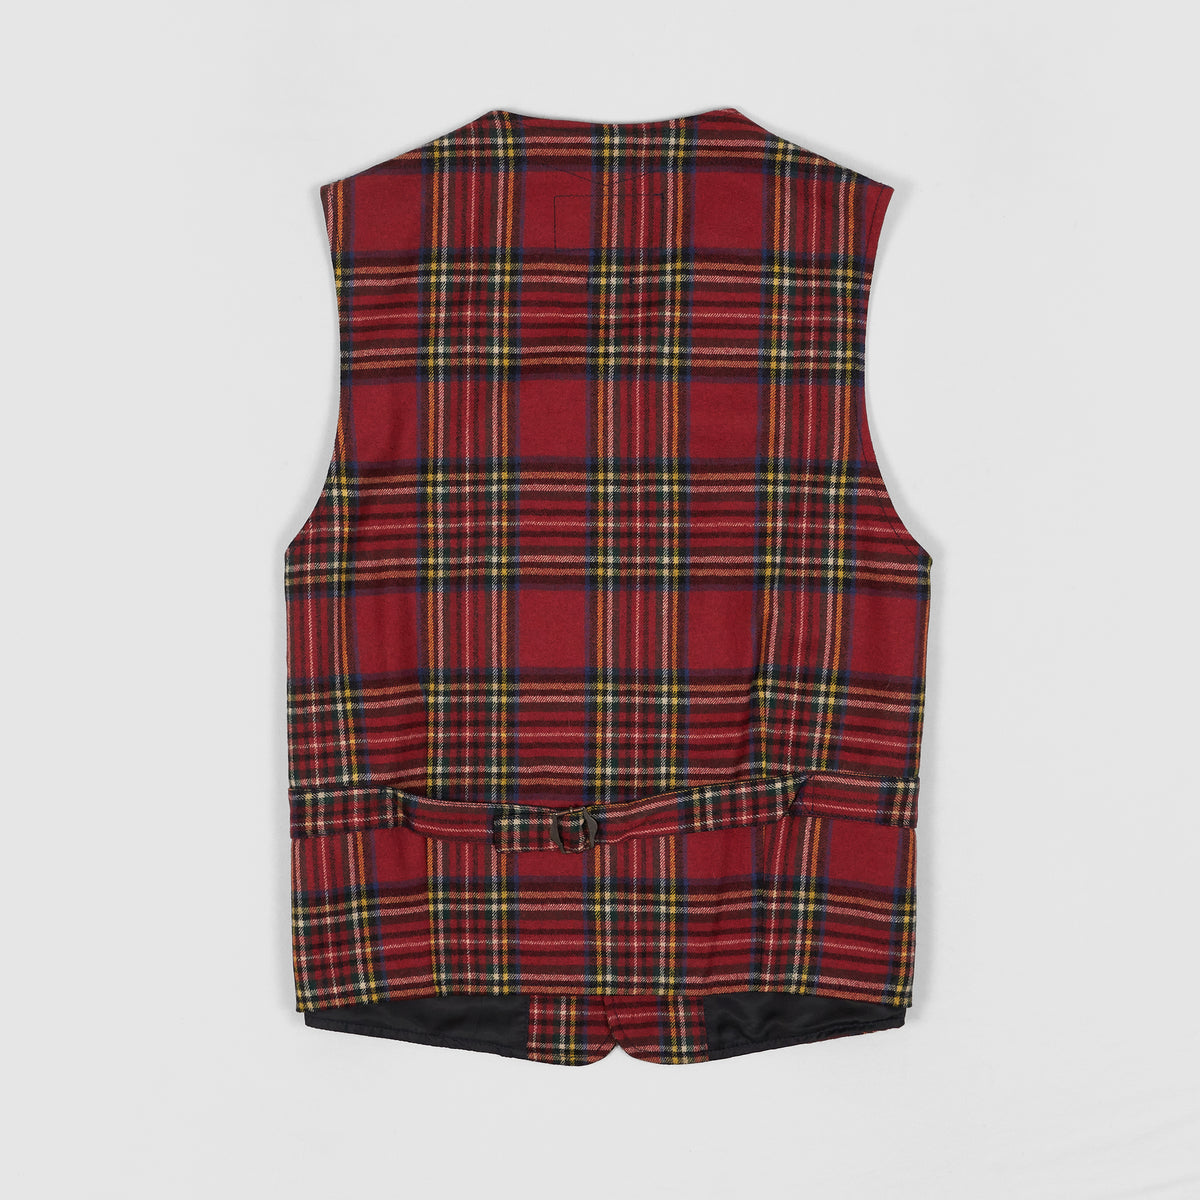 Manifattura Ceccarelli Yorkshire Tweed Tartan Vest